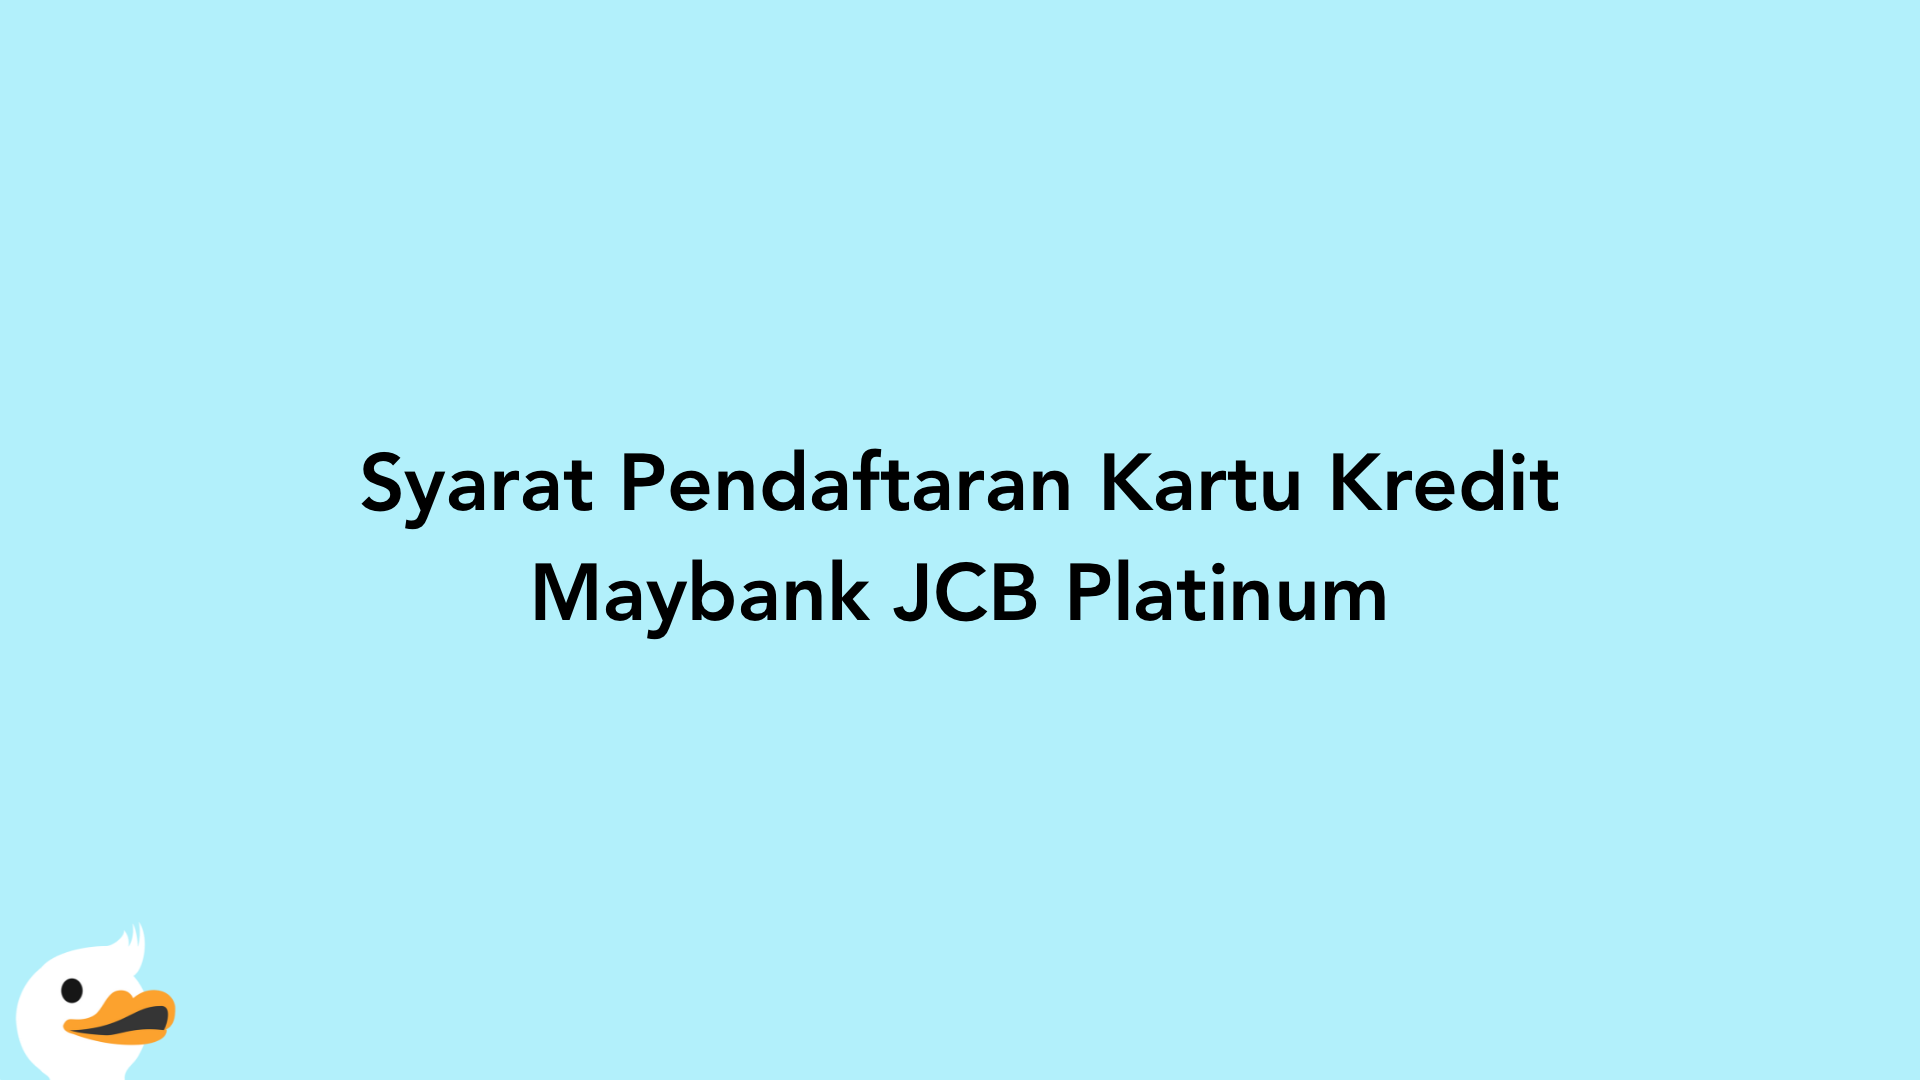 Syarat Pendaftaran Kartu Kredit Maybank JCB Platinum